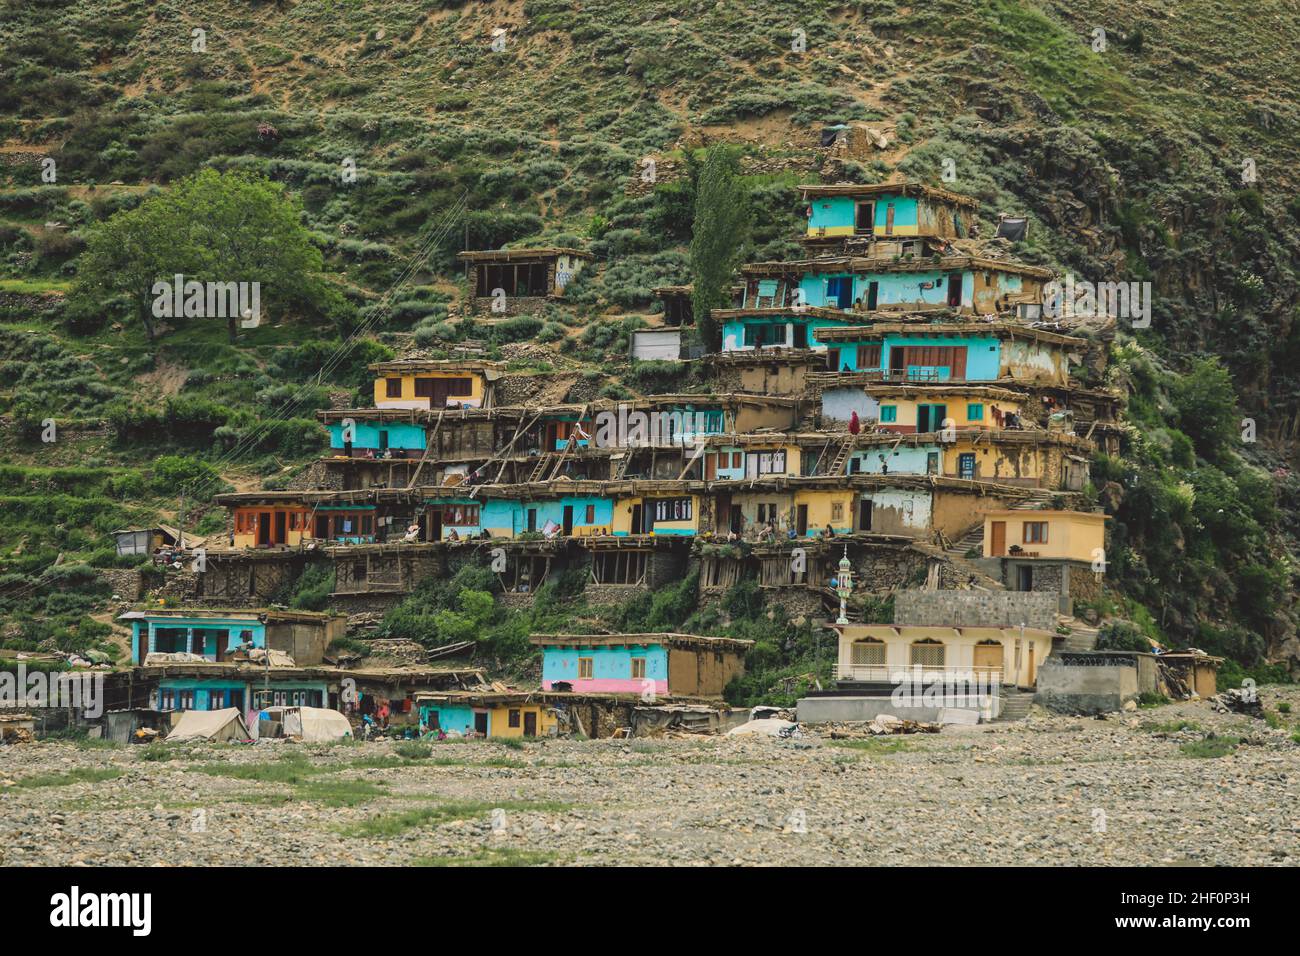 Traditionelle und einzigartige Dorfhäuser auf dem grünen Hochland in den pakistanischen Bergen, Gilgit - Baltistan, Pakistan Stockfoto